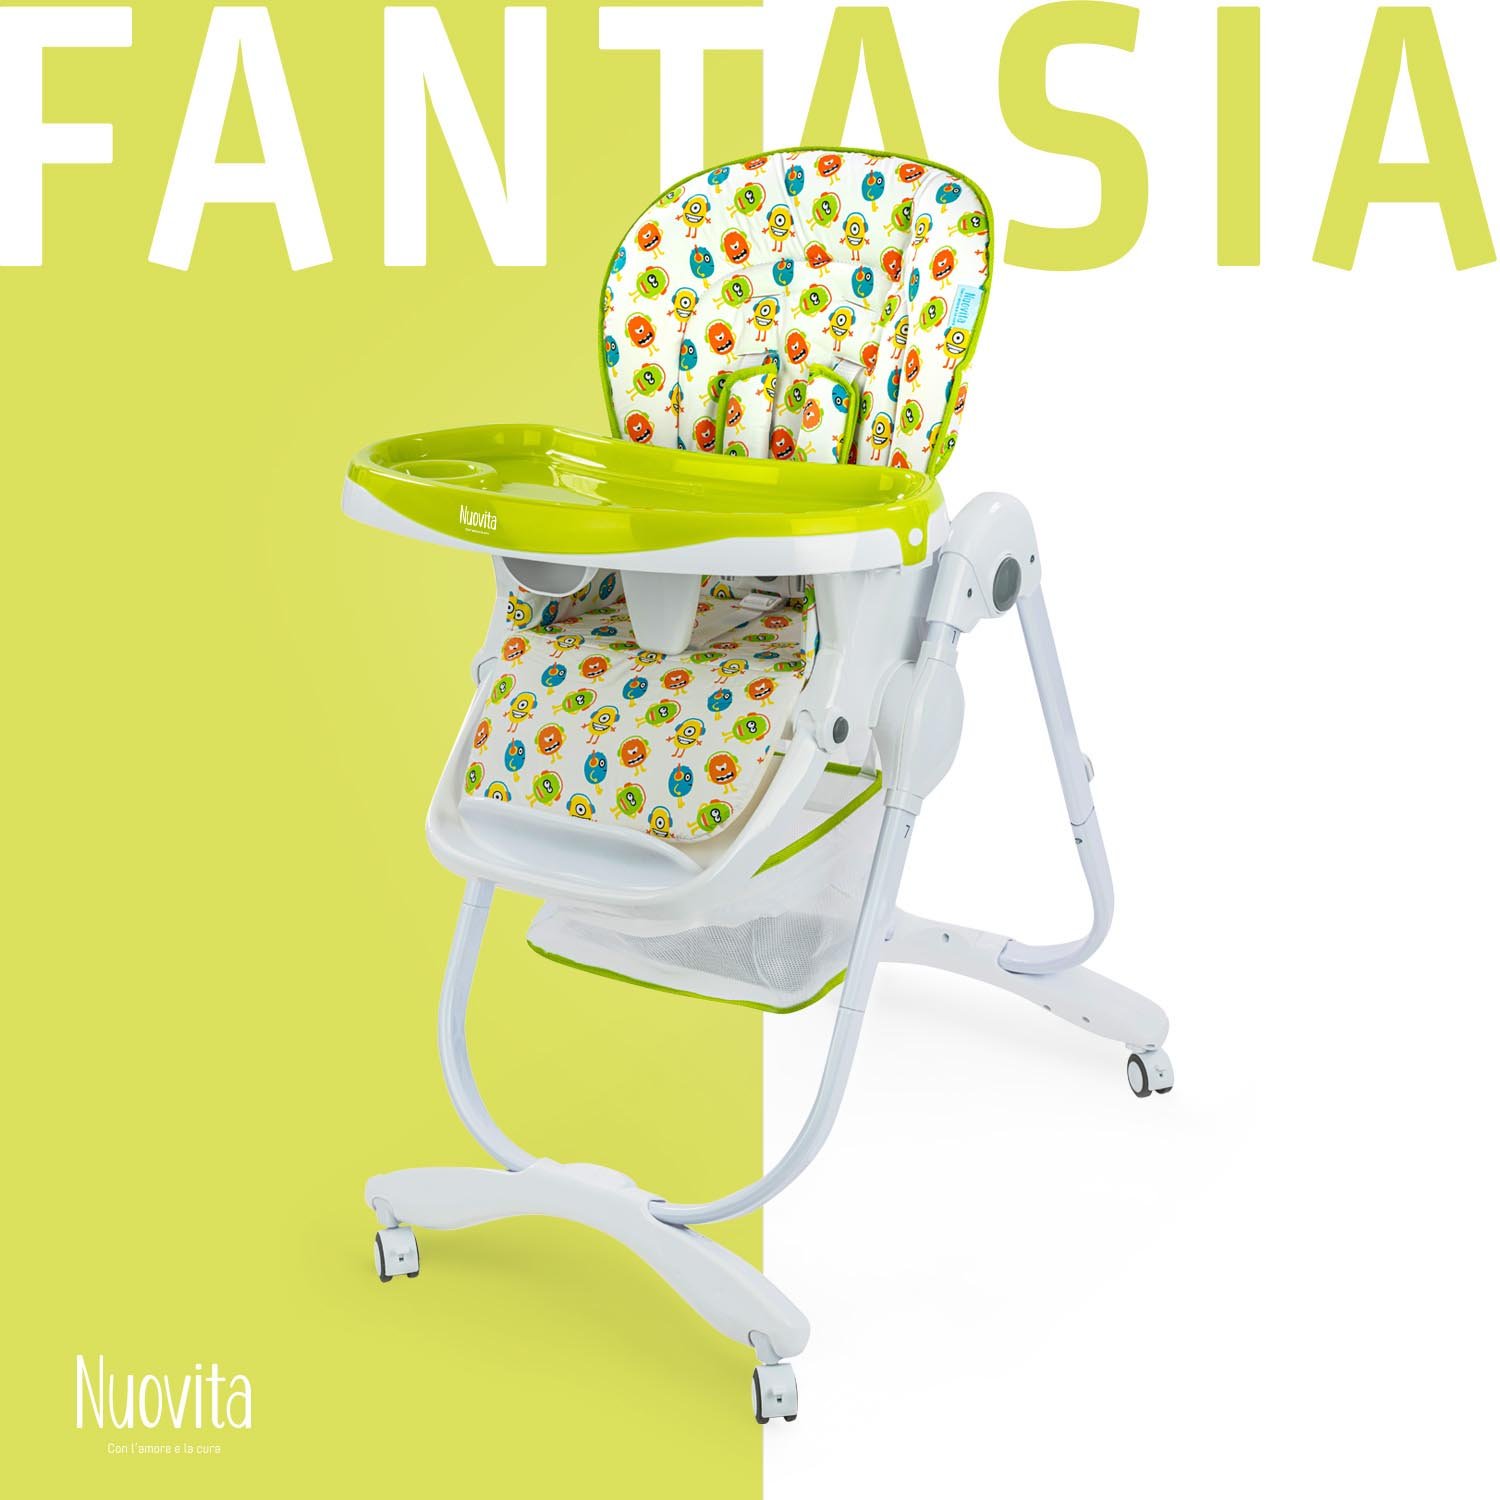 Стульчик для кормления Nuovita Fantasia (Amici/Друзья) стульчик для кормления nuovita fantasia latte латте